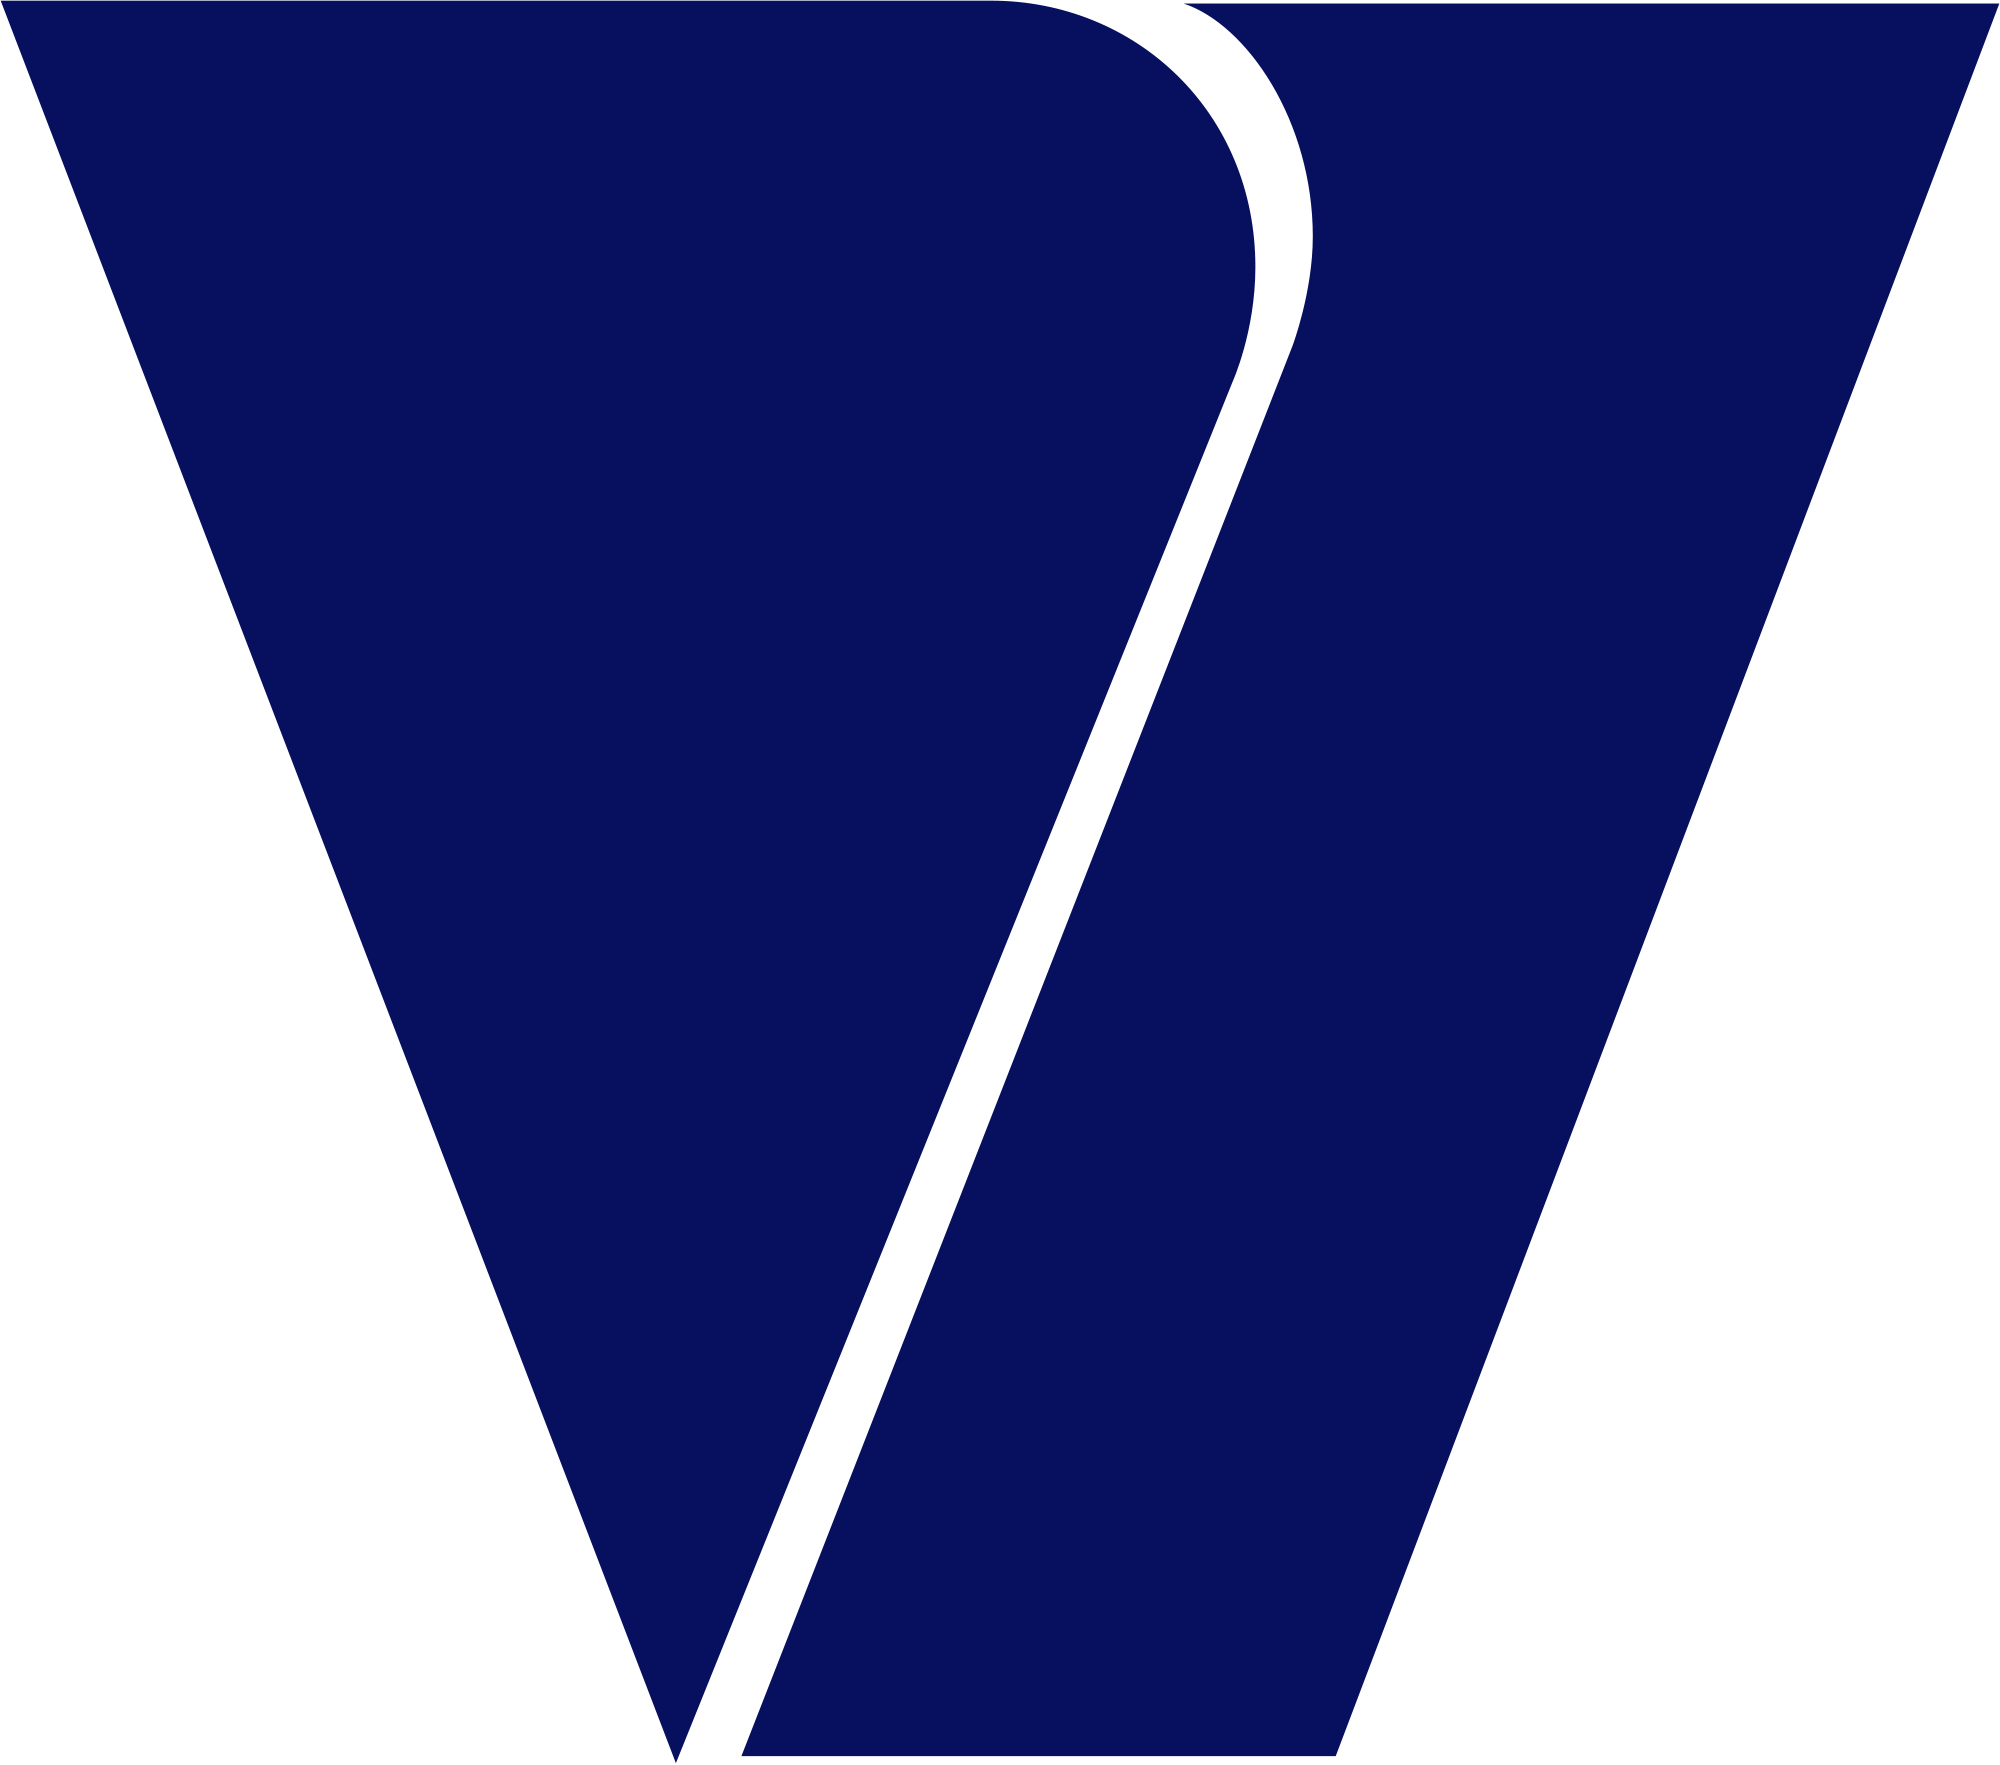 Viacom Logo - Viacom Logo.png. Caillou tlt uolliaC